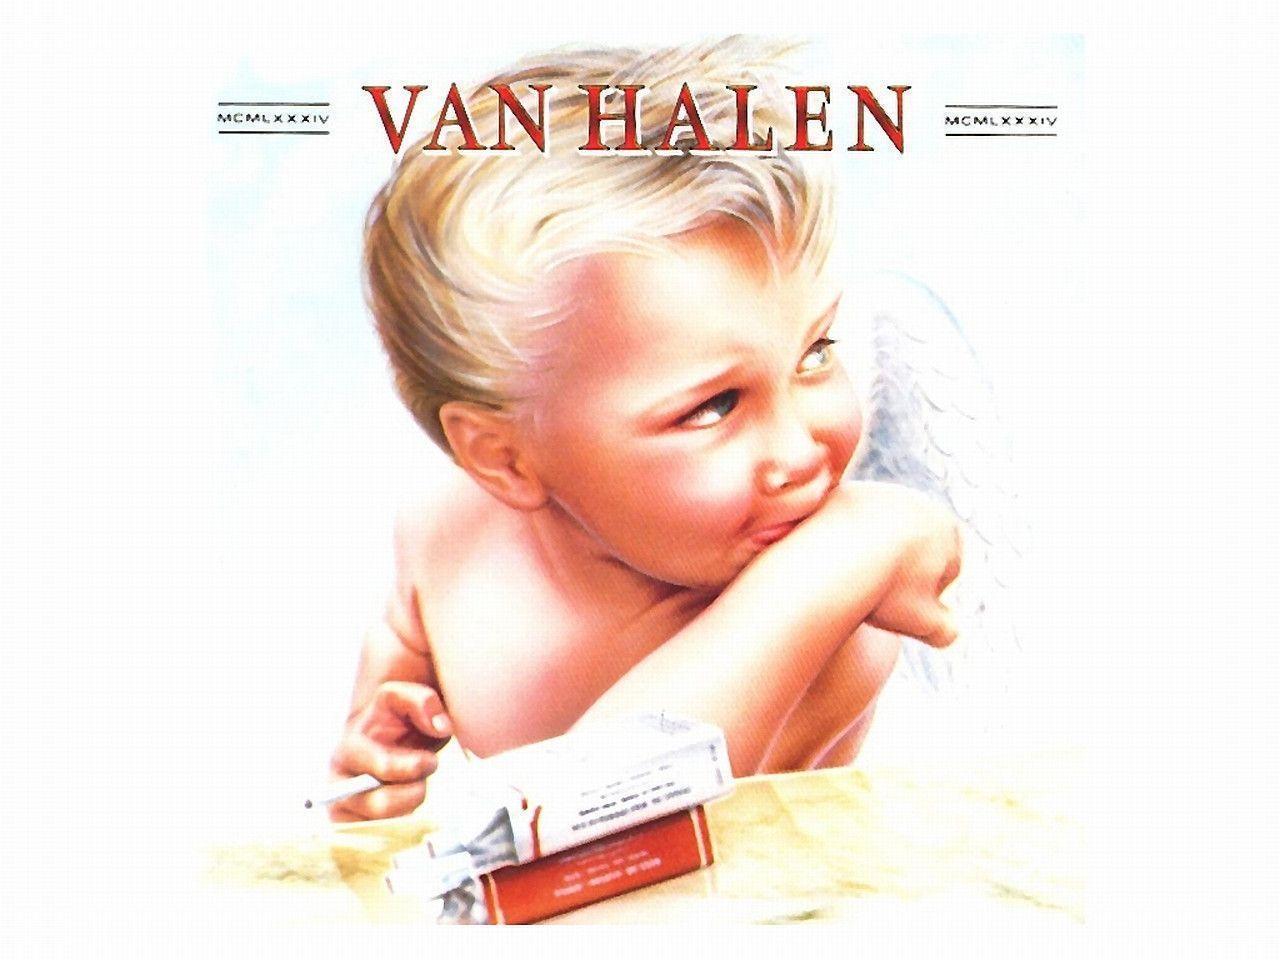 Van Halen Computer Wallpaper, Desktop Background 1280x960 Id: 239955